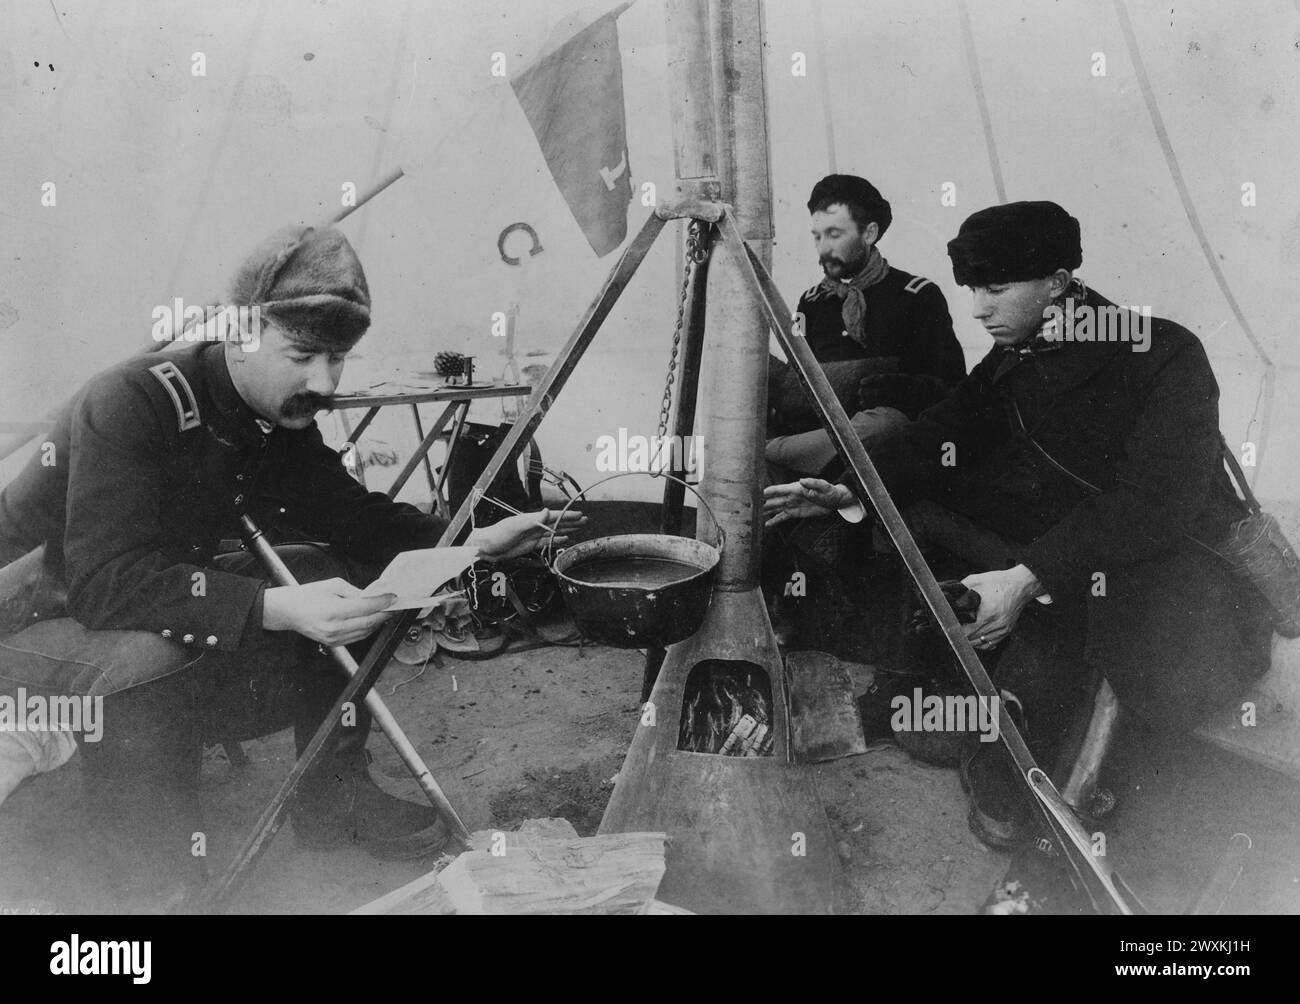 Soldaten sitzen in einem Zelt neben einem Feuer während der Pine Ridge Kampagne; Lt. W.C. Brown von der 1. Kavalary; Lt. G.H. McDonald und Lt. A.H. Sydenham CA. 1890-1891 Stockfoto